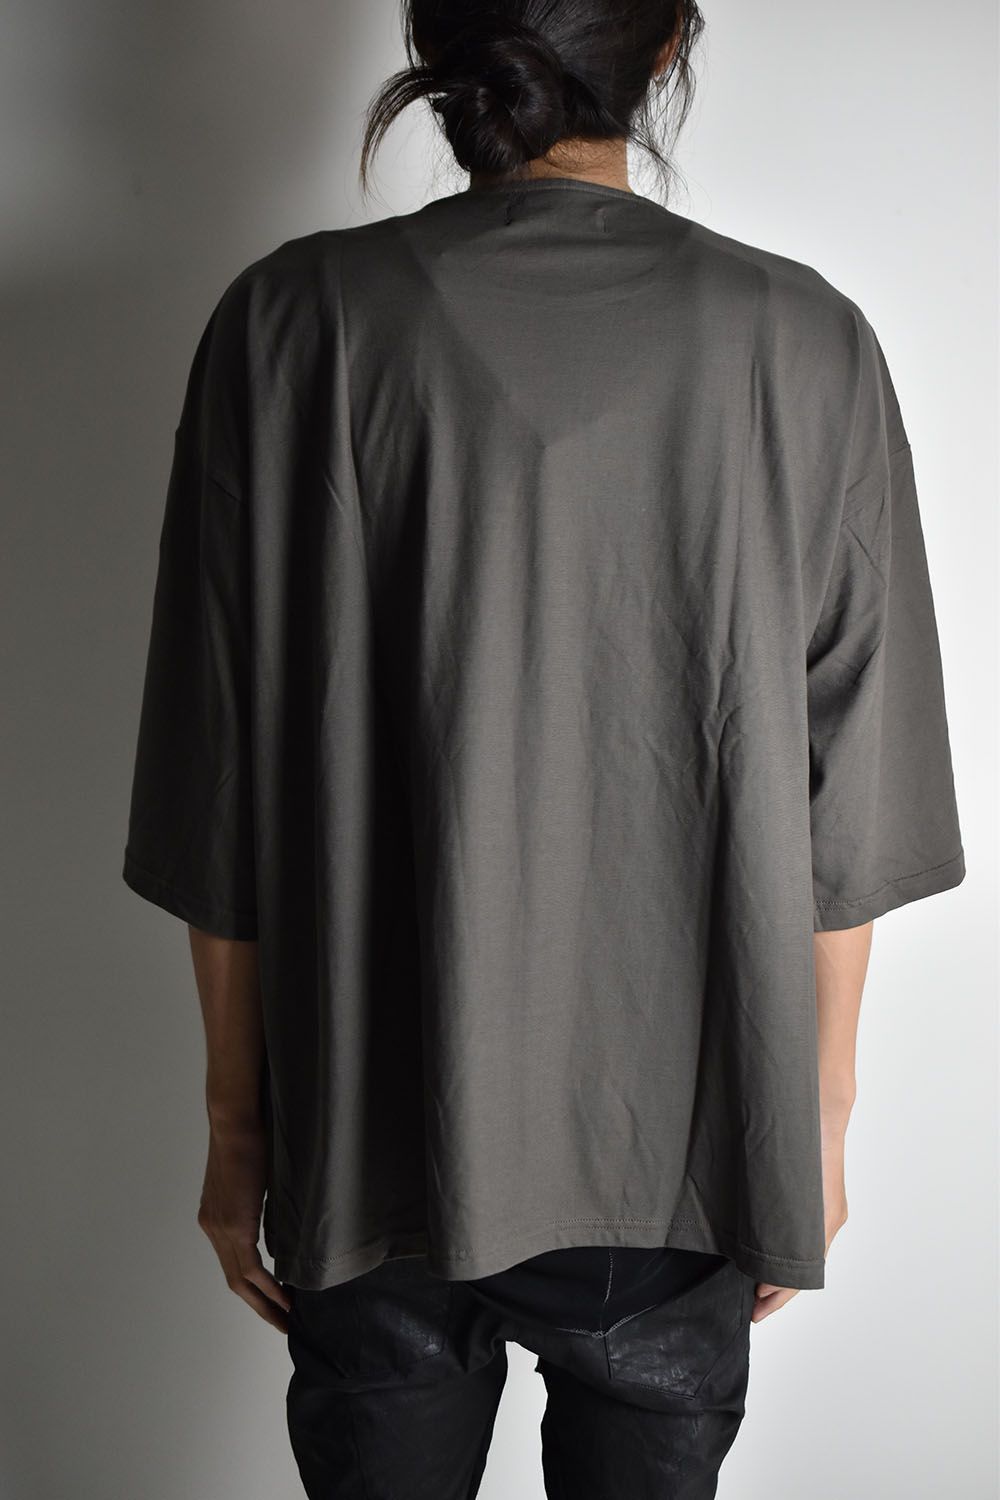 Loose Fit M/S T-Shirt"Charcoal"ルーズフィットミディアムスリーブTee"チャコール"